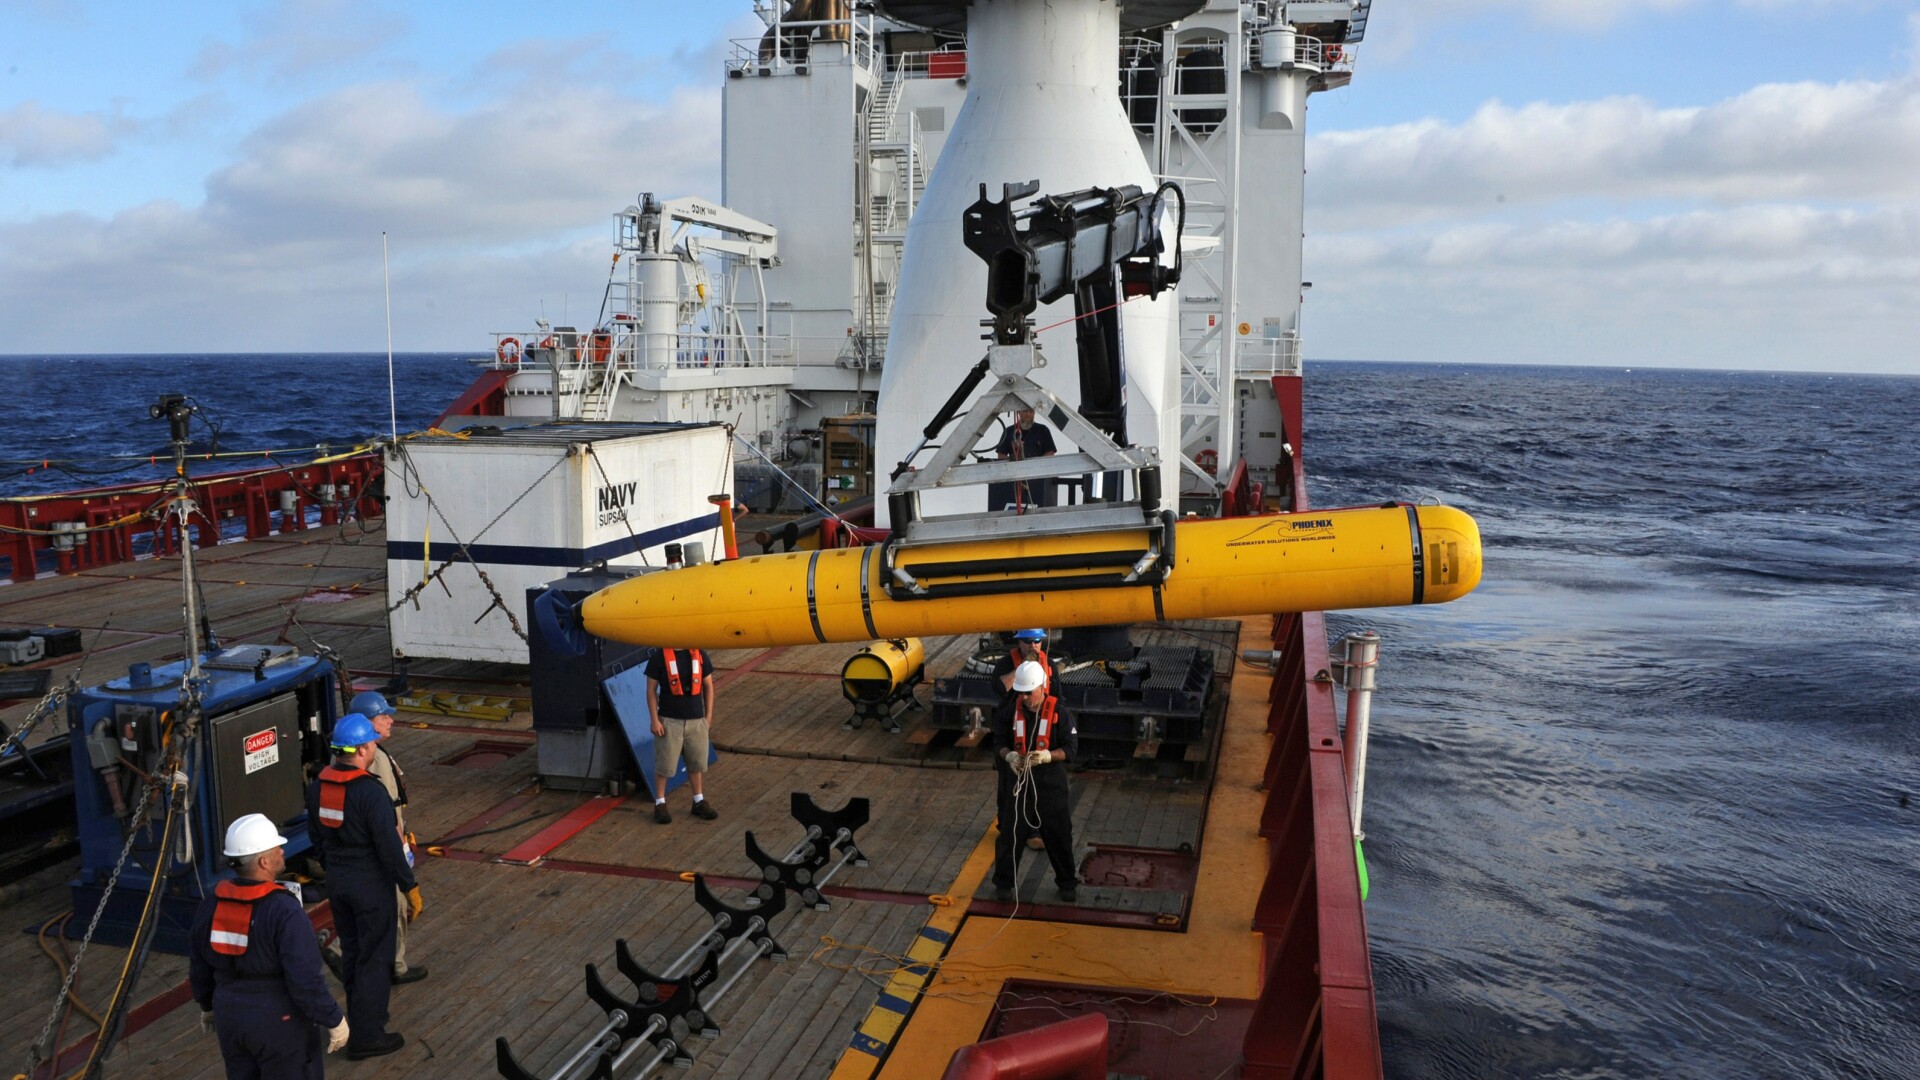 Bluefin-21, robotul subacvatic folosit in cautarea avionului MH370